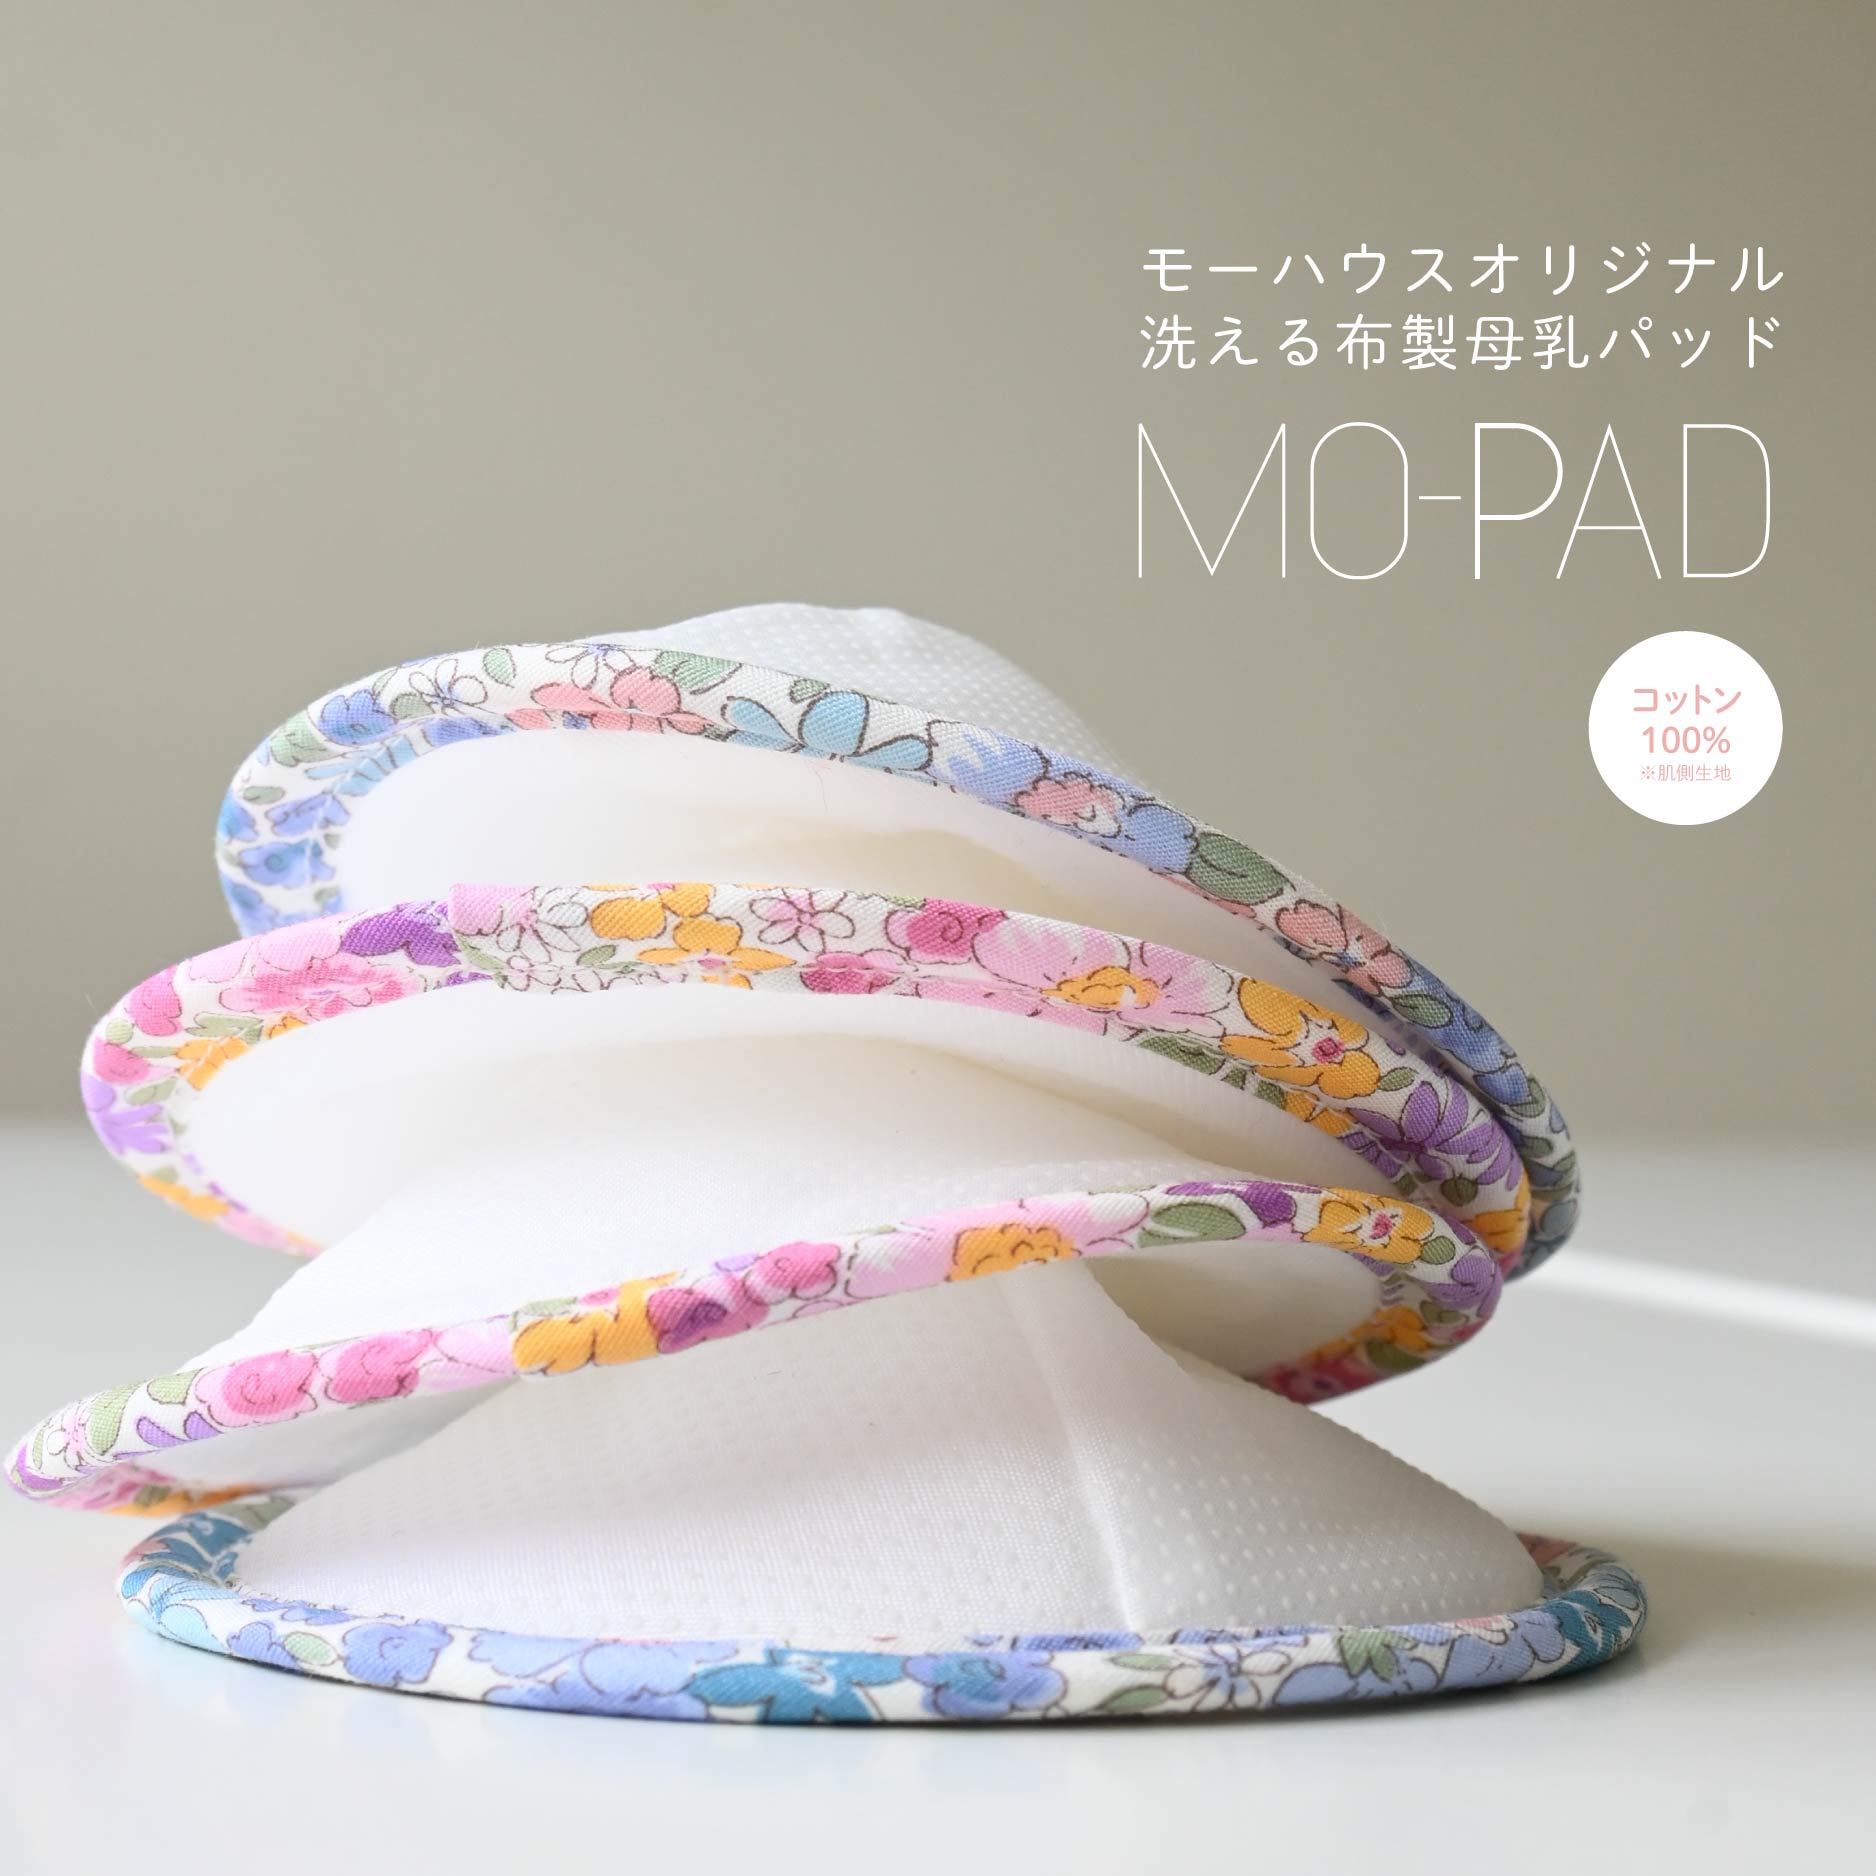 モーハウスオリジナル日本製の母乳パッド